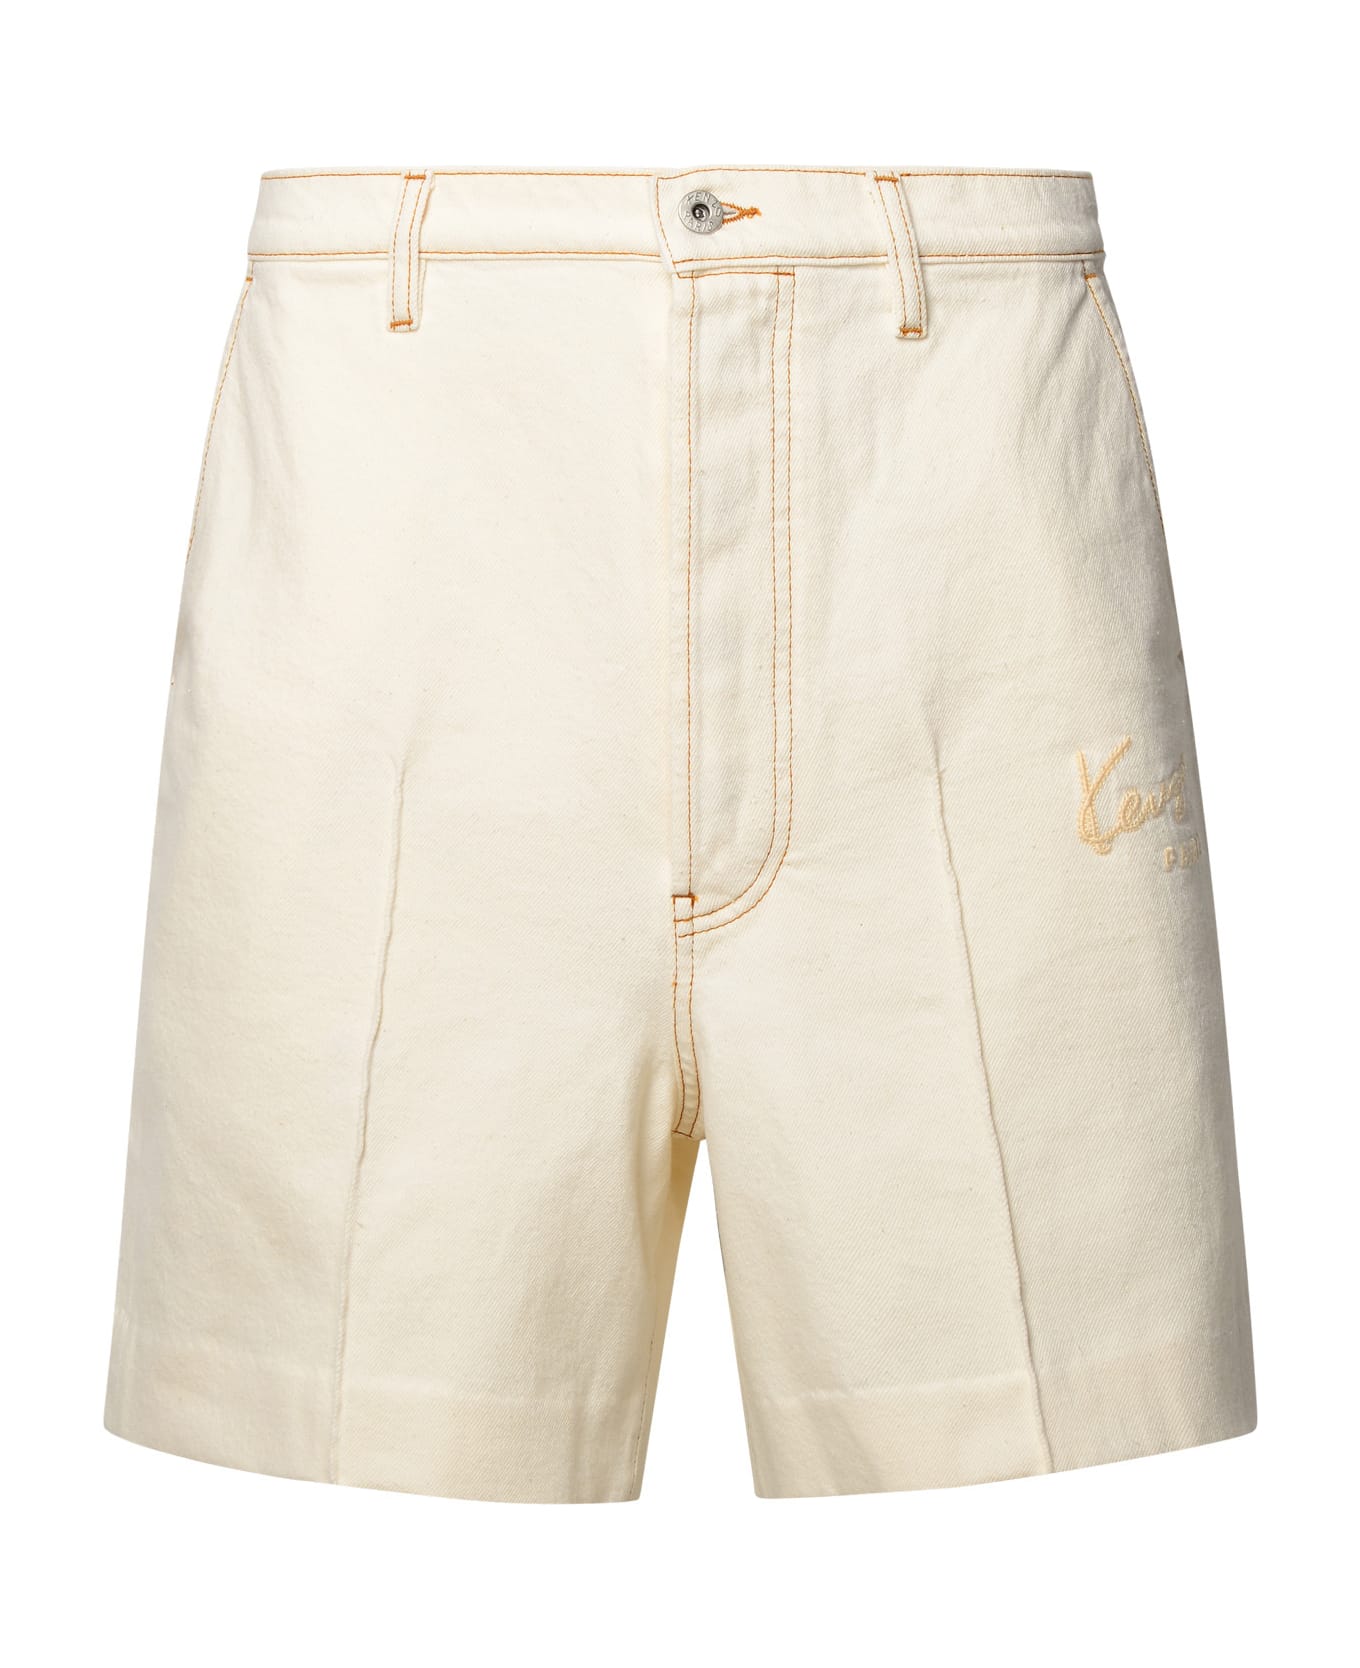 Kenzo Beige Cotton Blend Bermuda Shorts - Beige